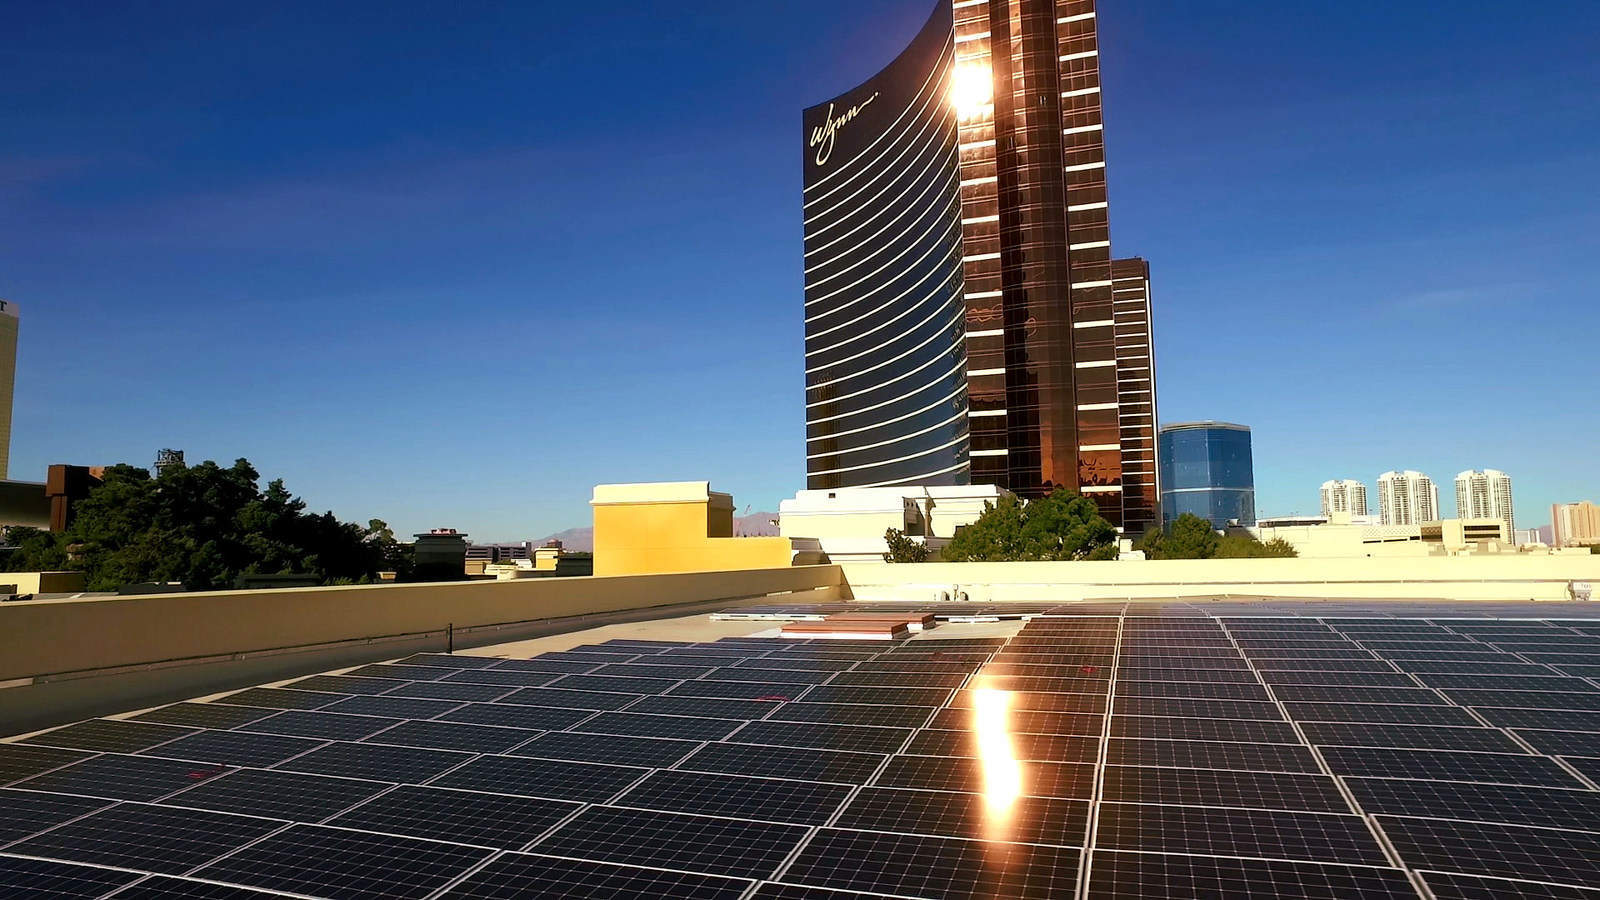 Wynn Resorts inaugurates 27MW solar plant in Nevada